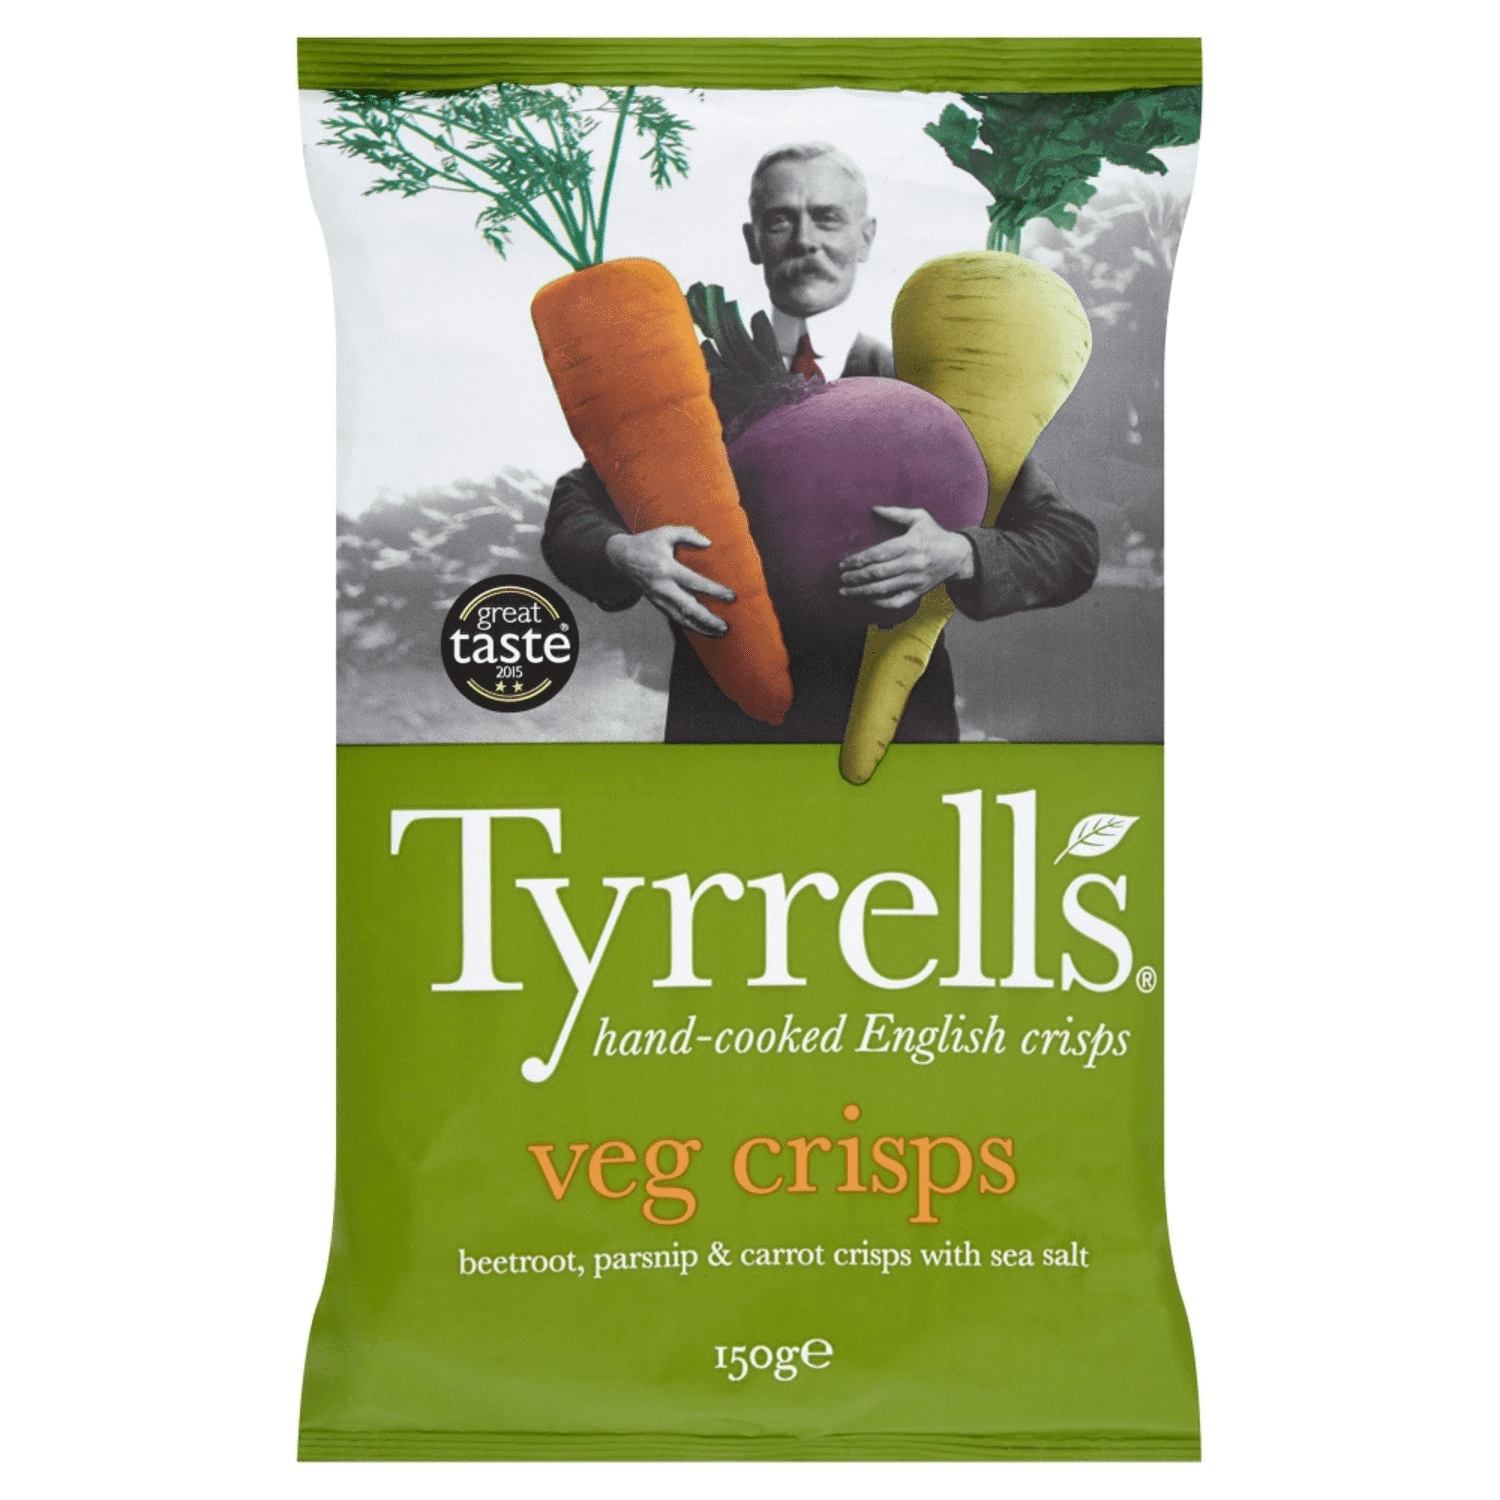 Chips Veg Crips 150g - TYRRELL?S